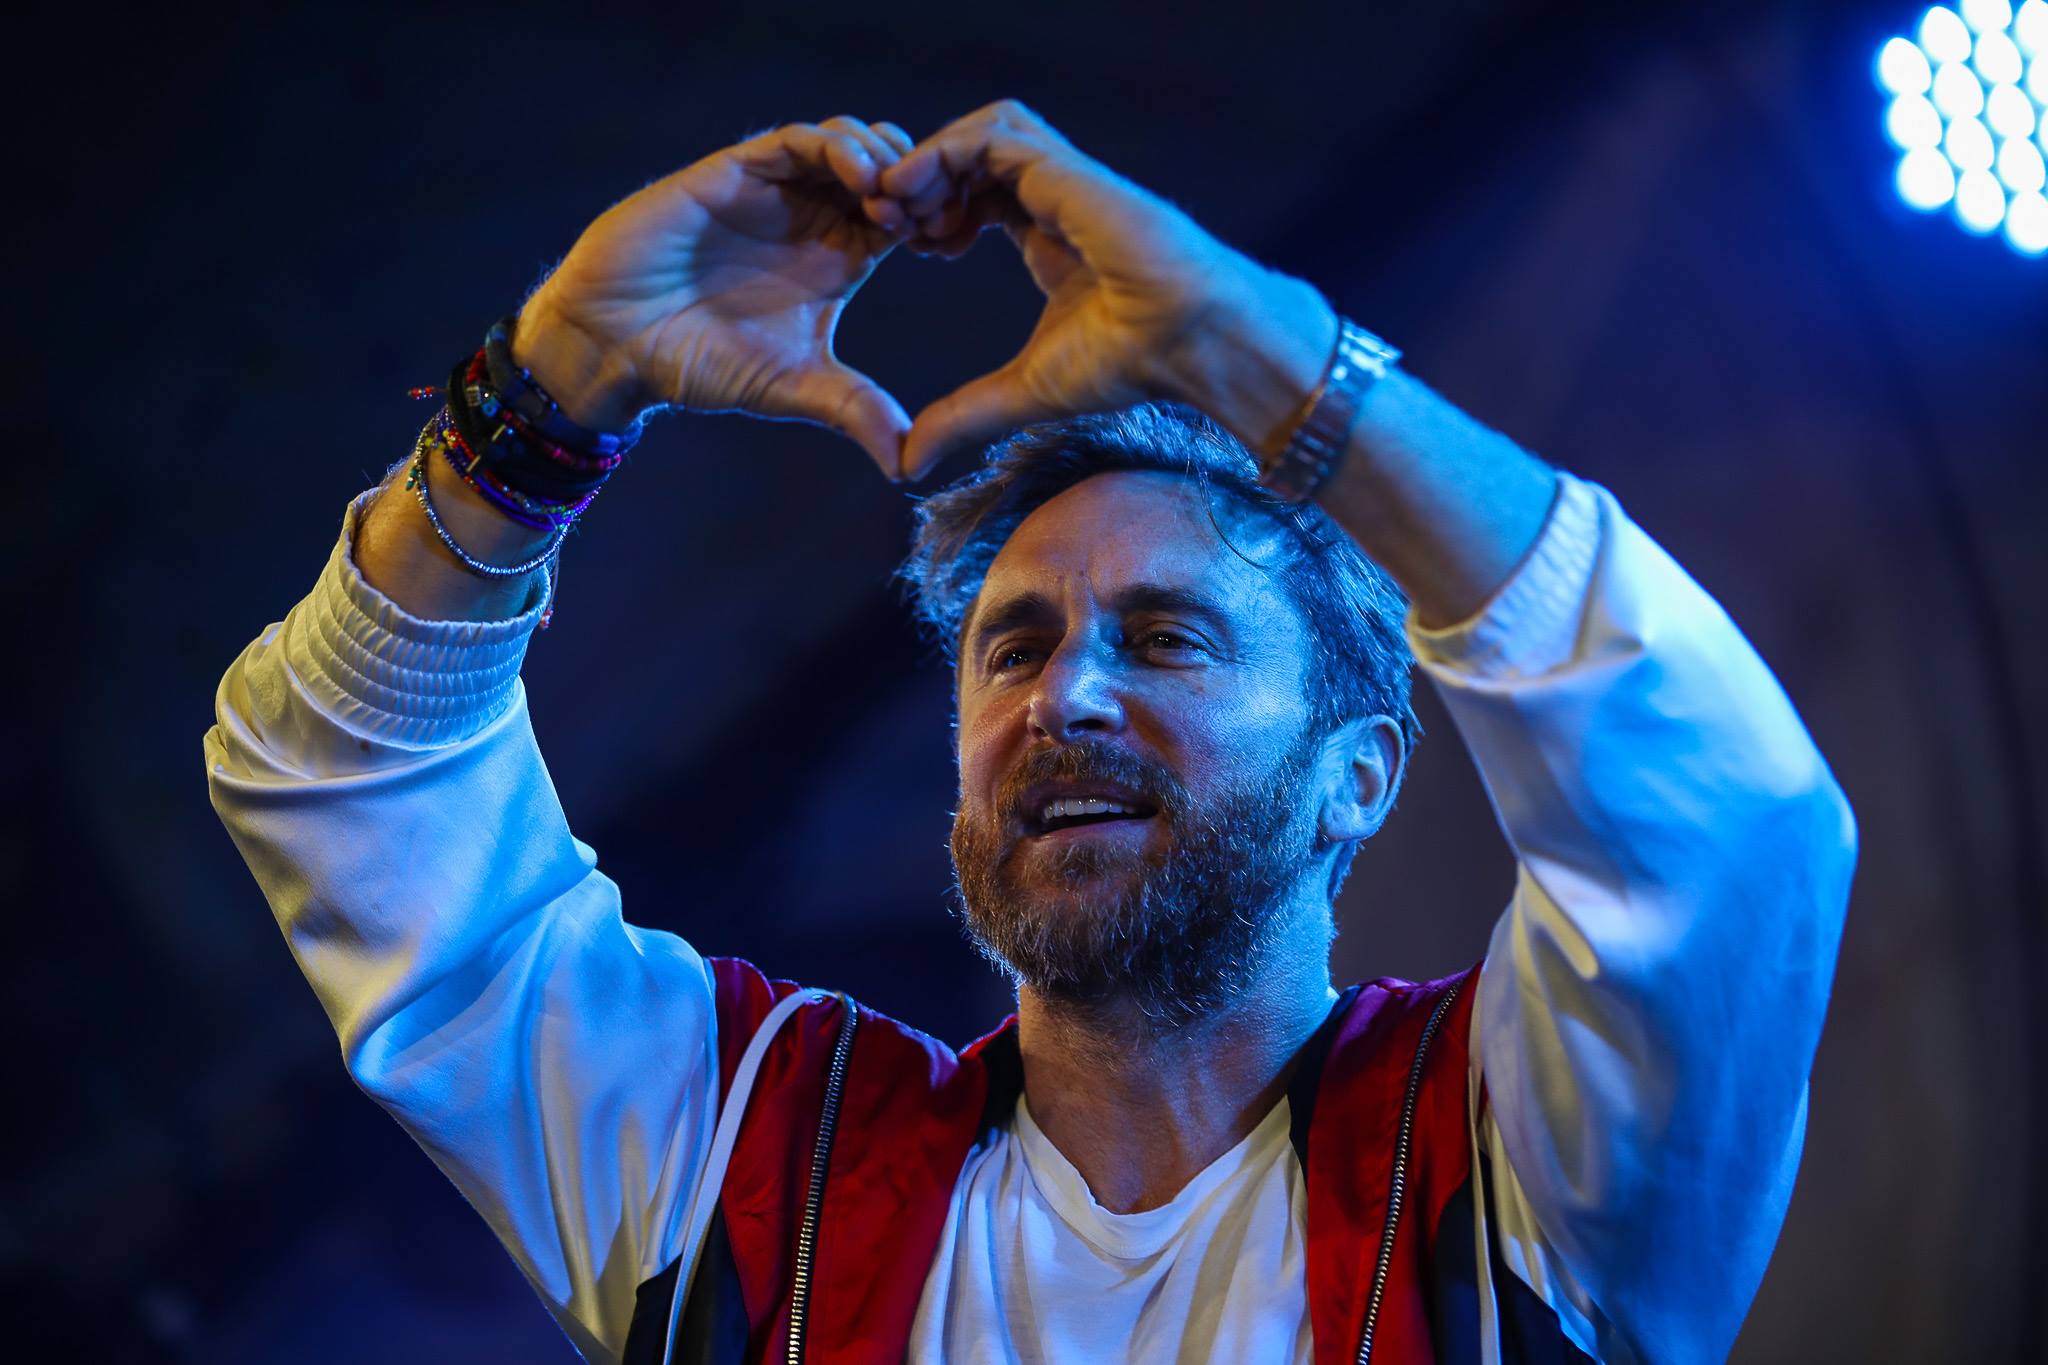 David Guetta Dara Un Concierto Desde La Piramide Del Louvre Noticias Ultima Hora De Guatemala